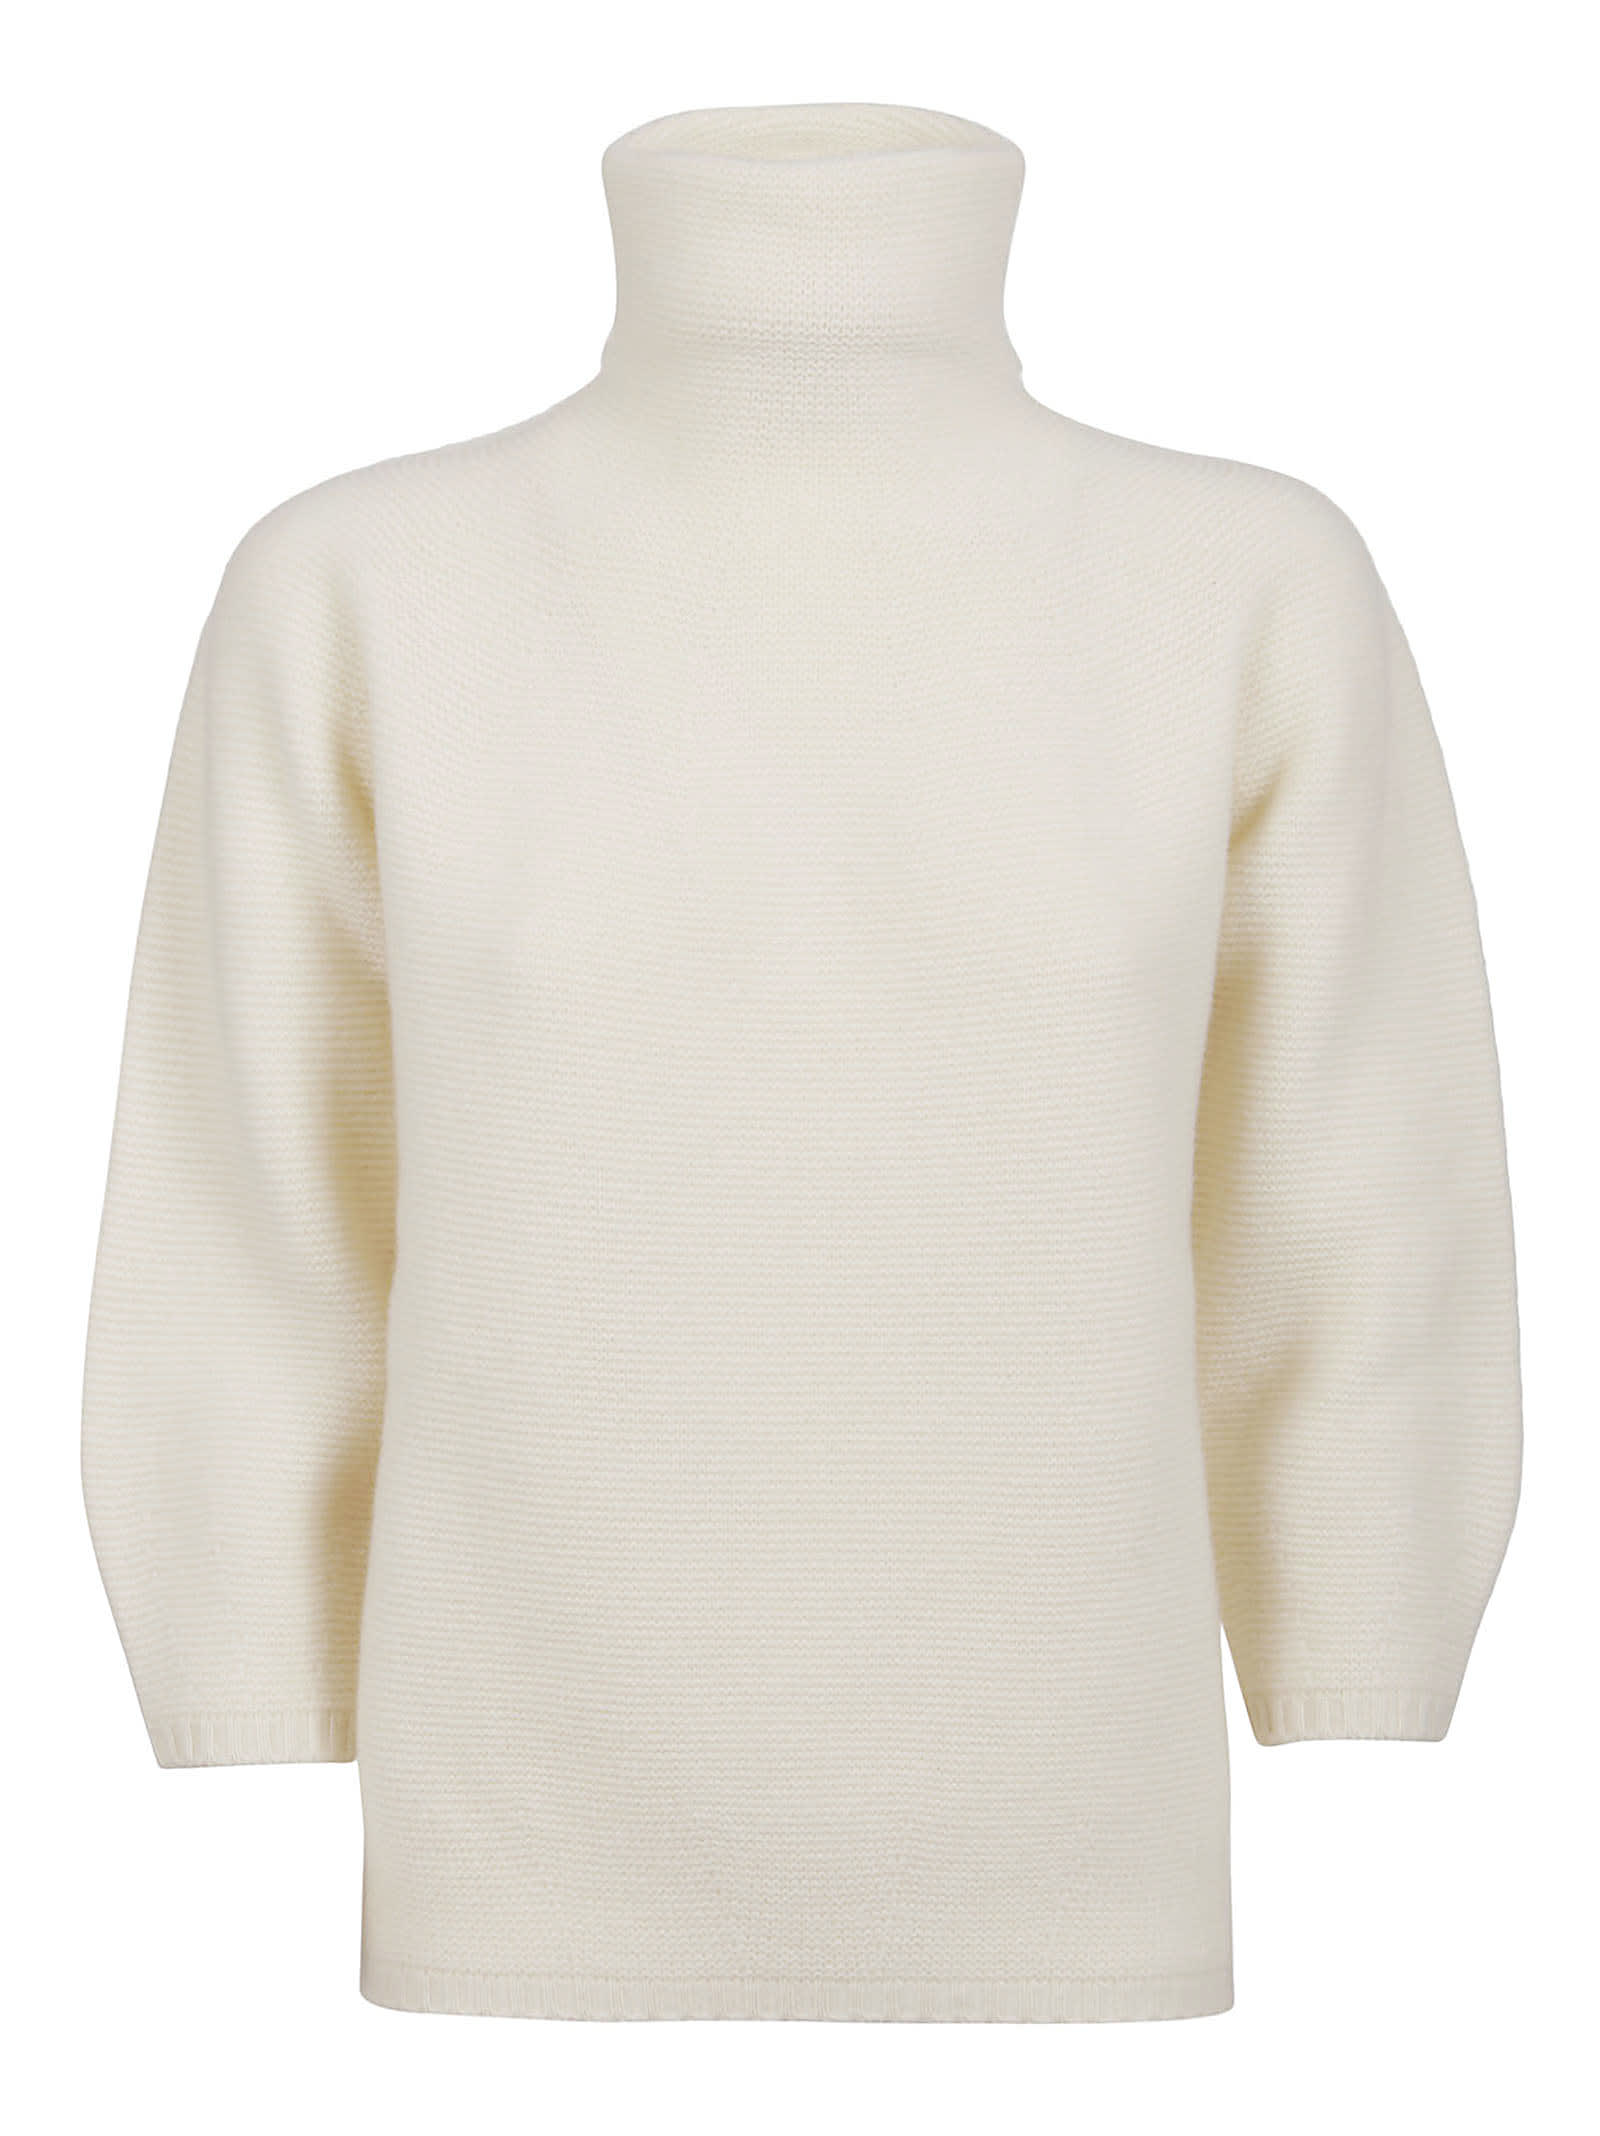 Max Mara White Wool Sweater